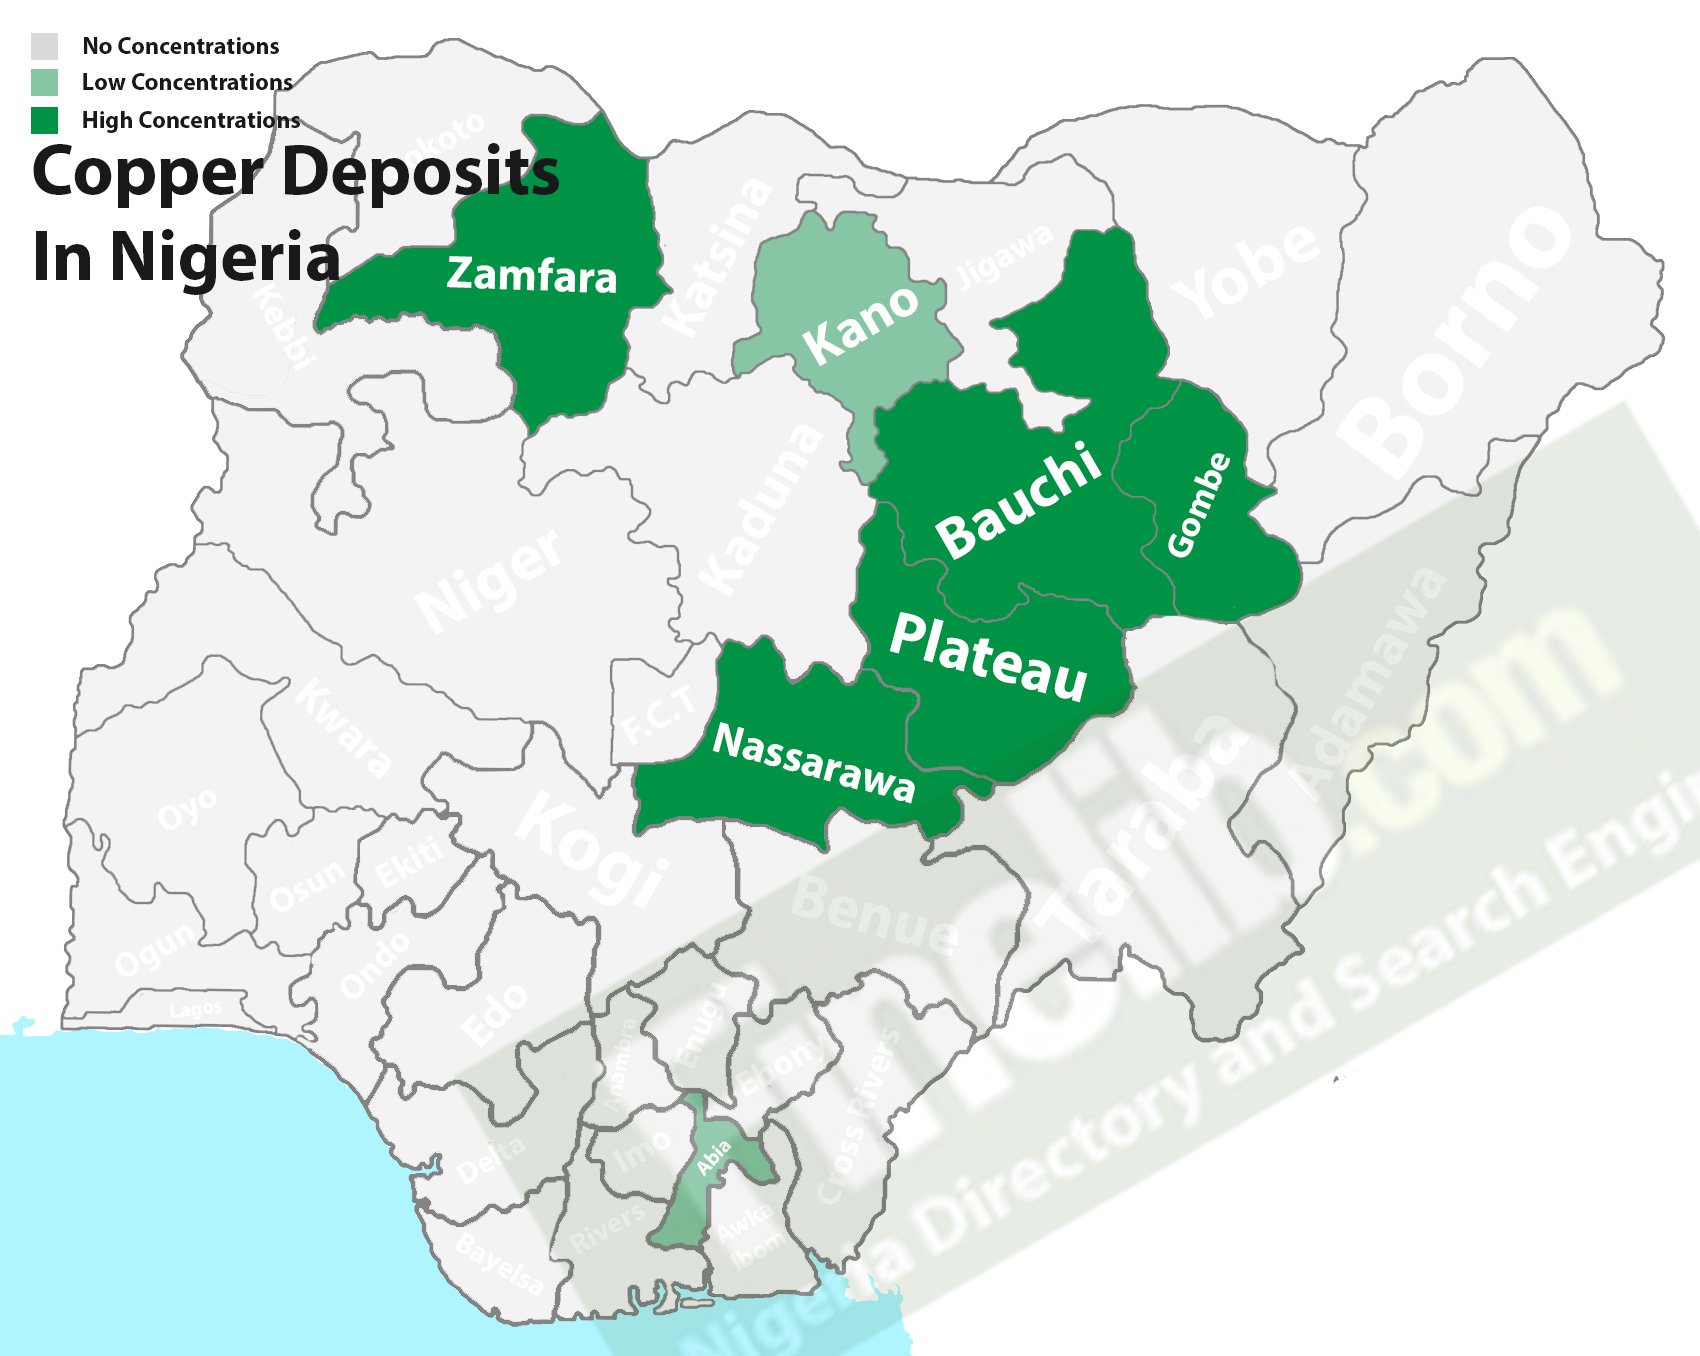 Copper deposits in Nigeria